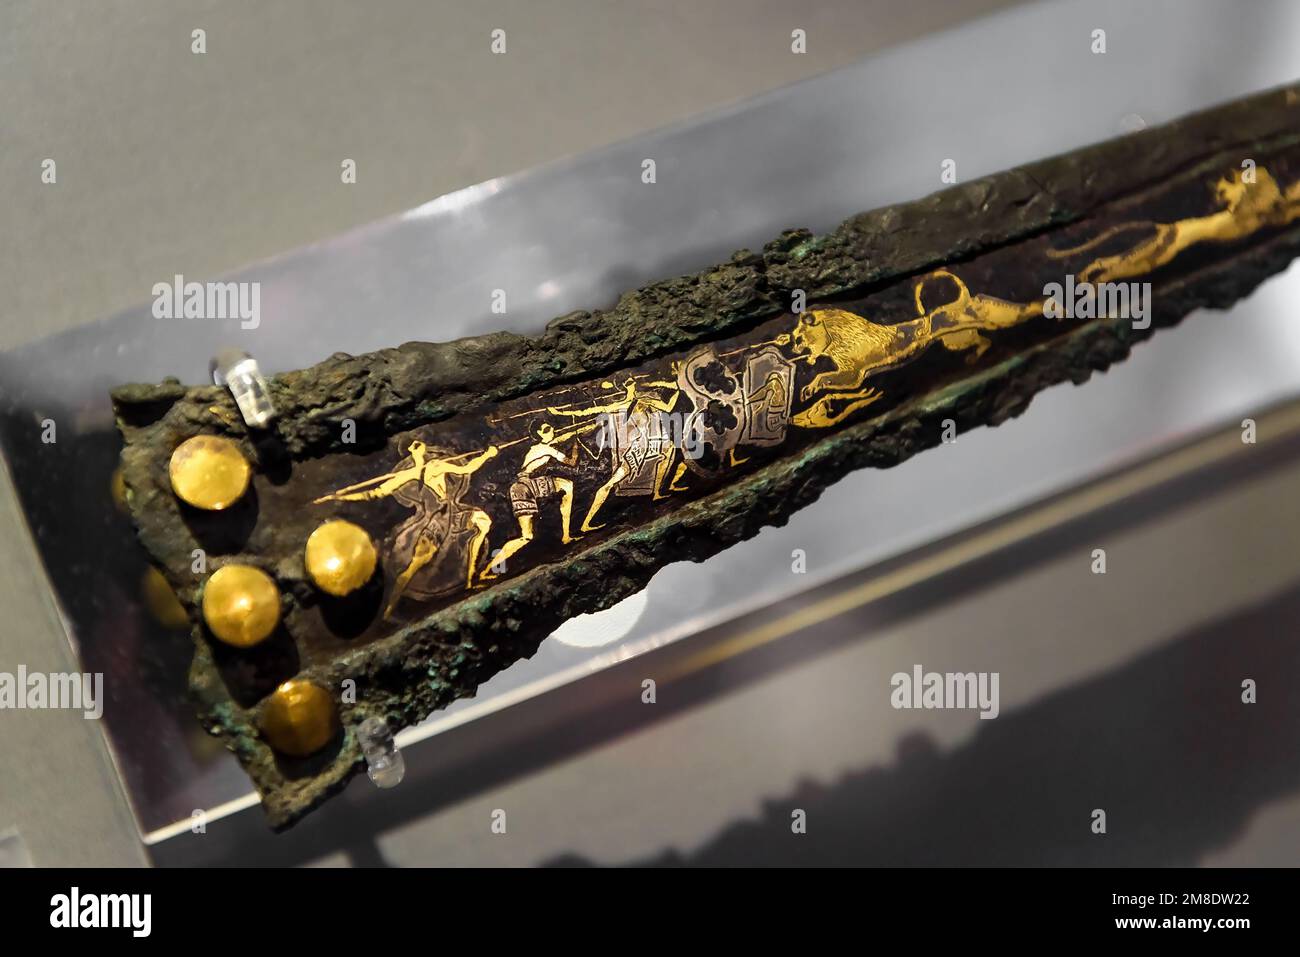 Atene - 7 maggio 2018: Spada di bronzo con intarsi d'oro, artefatto da Micene greco (Mykines) nel Museo Archeologico Nazionale di Atene, Grecia. Histor (Istor) Foto Stock